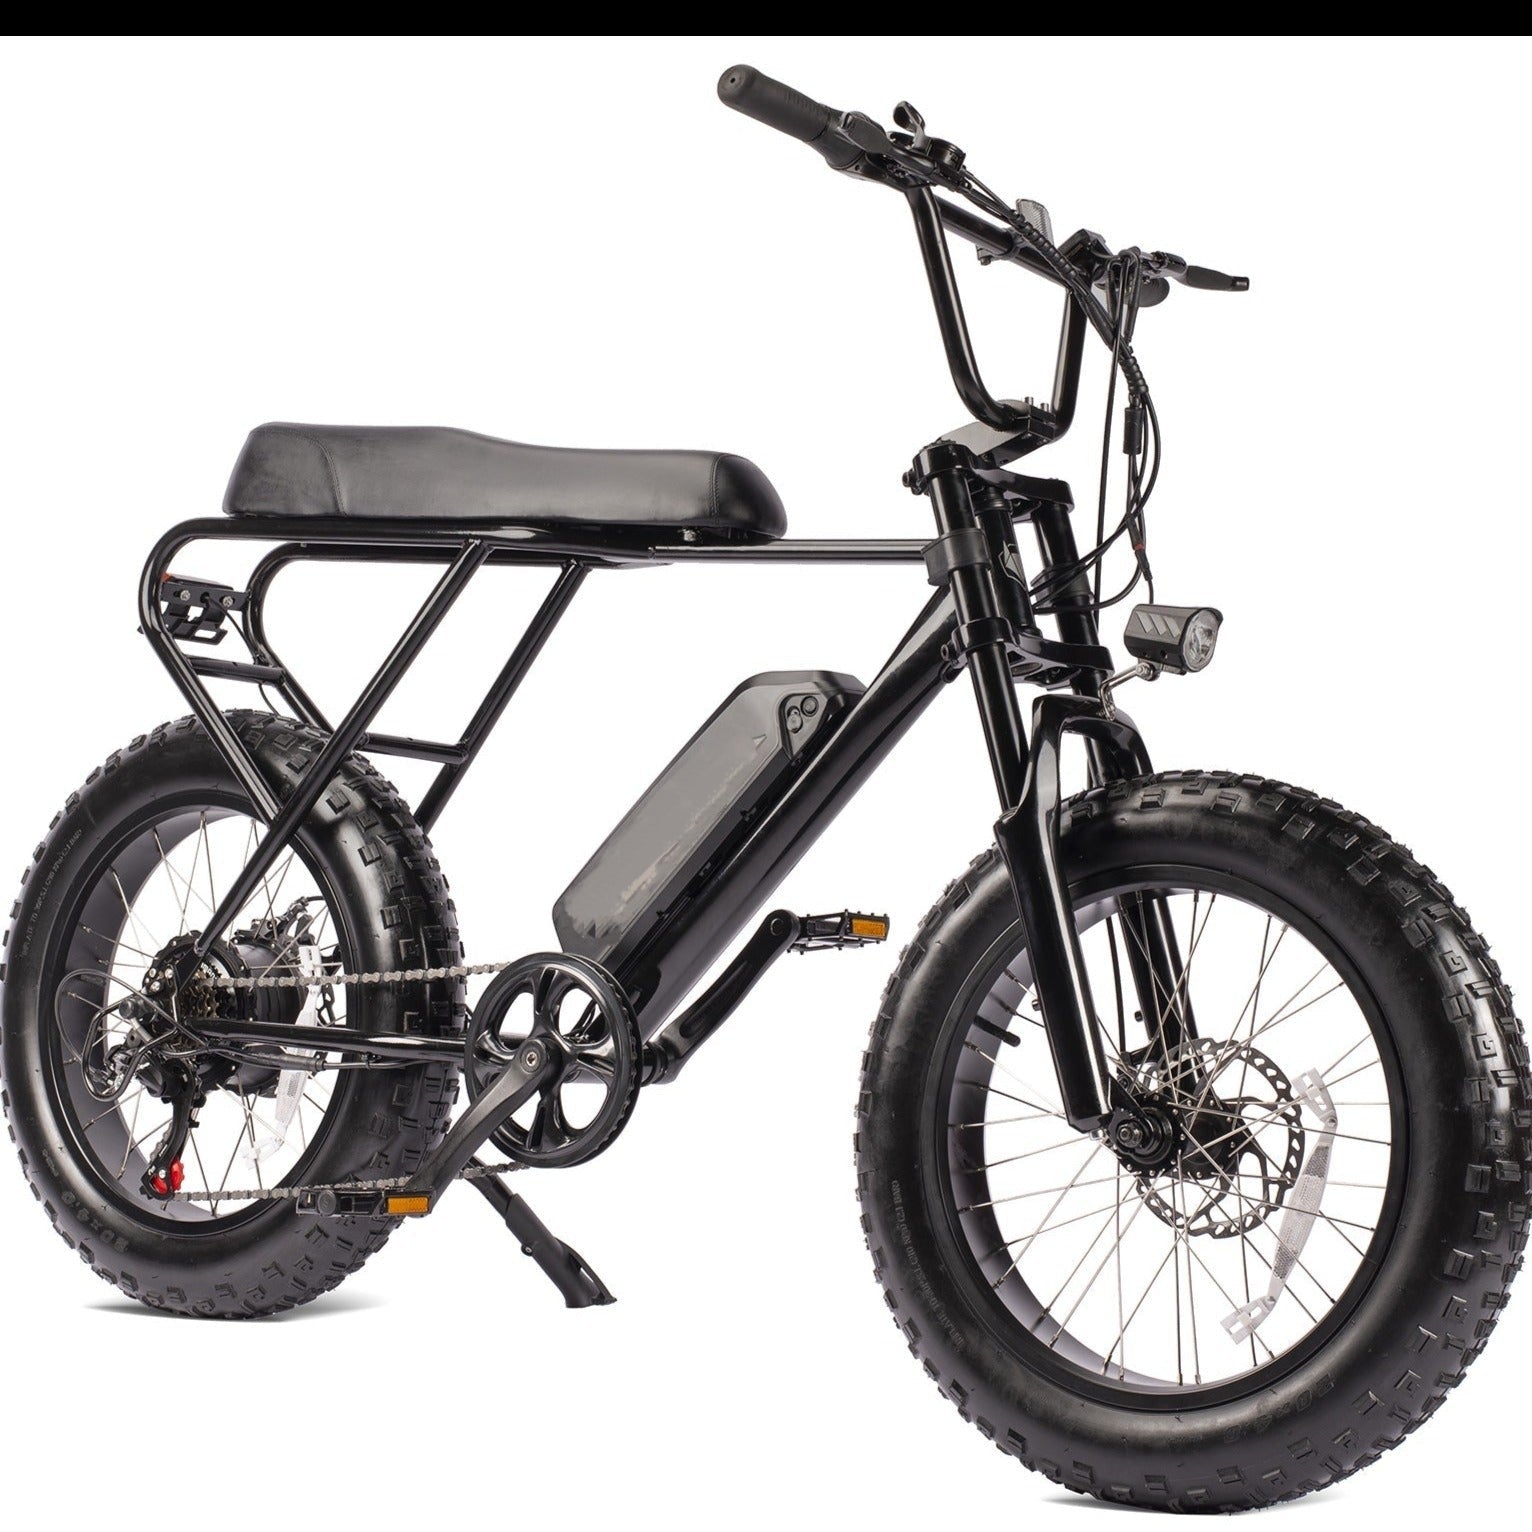 Macfox Mini Swell elektrische fiets, 20 inch dikke banden off-road elektrische fiets, zwart